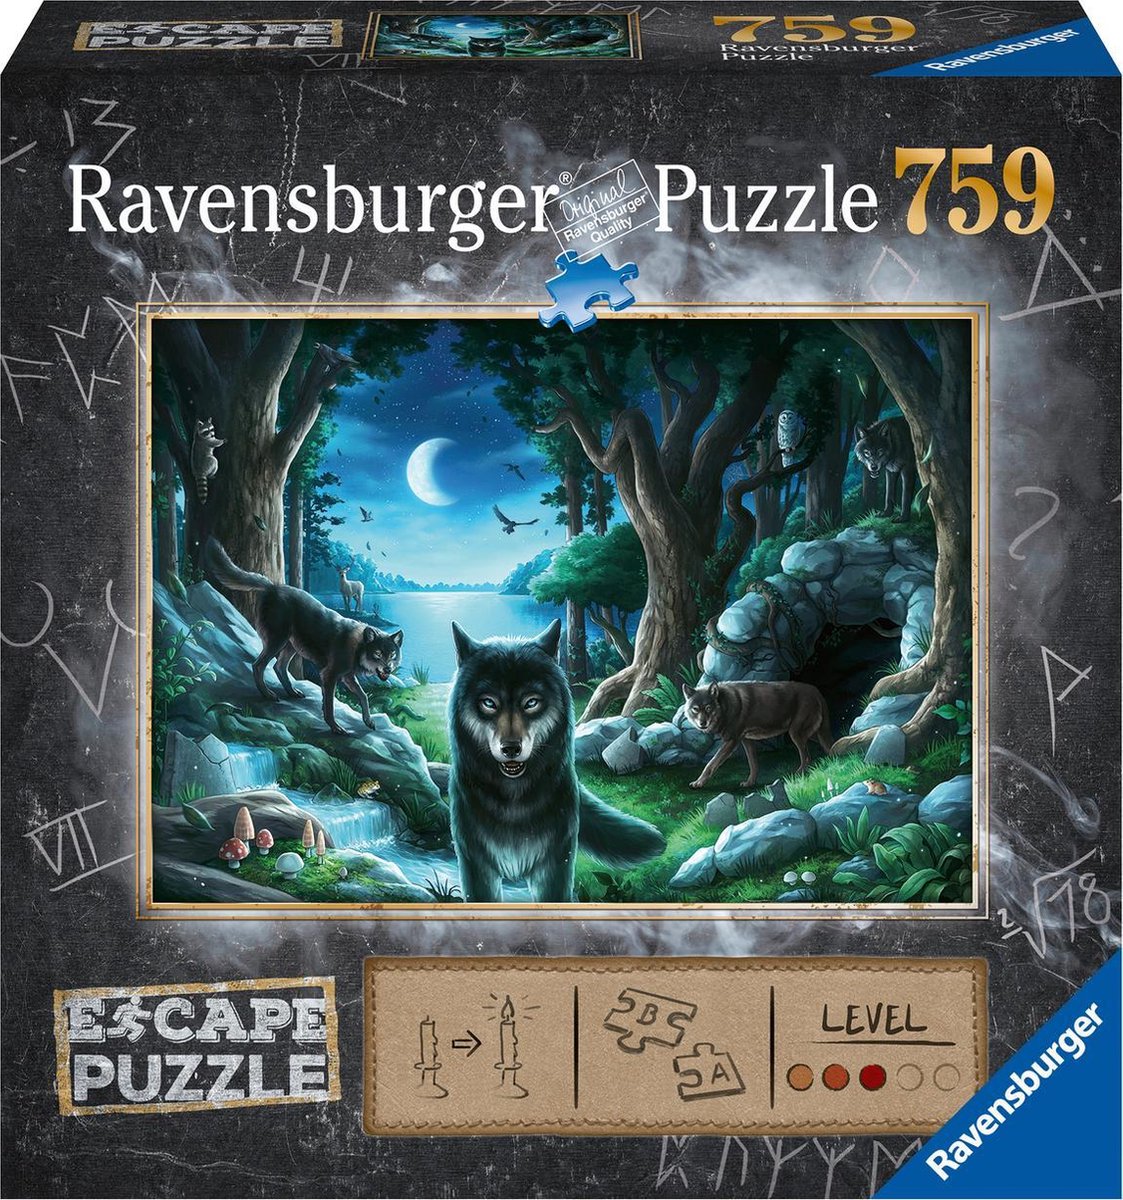 Ravensburger Escape Puzzle 7 Curse of the Wolves - 759 stukjes | bol.com